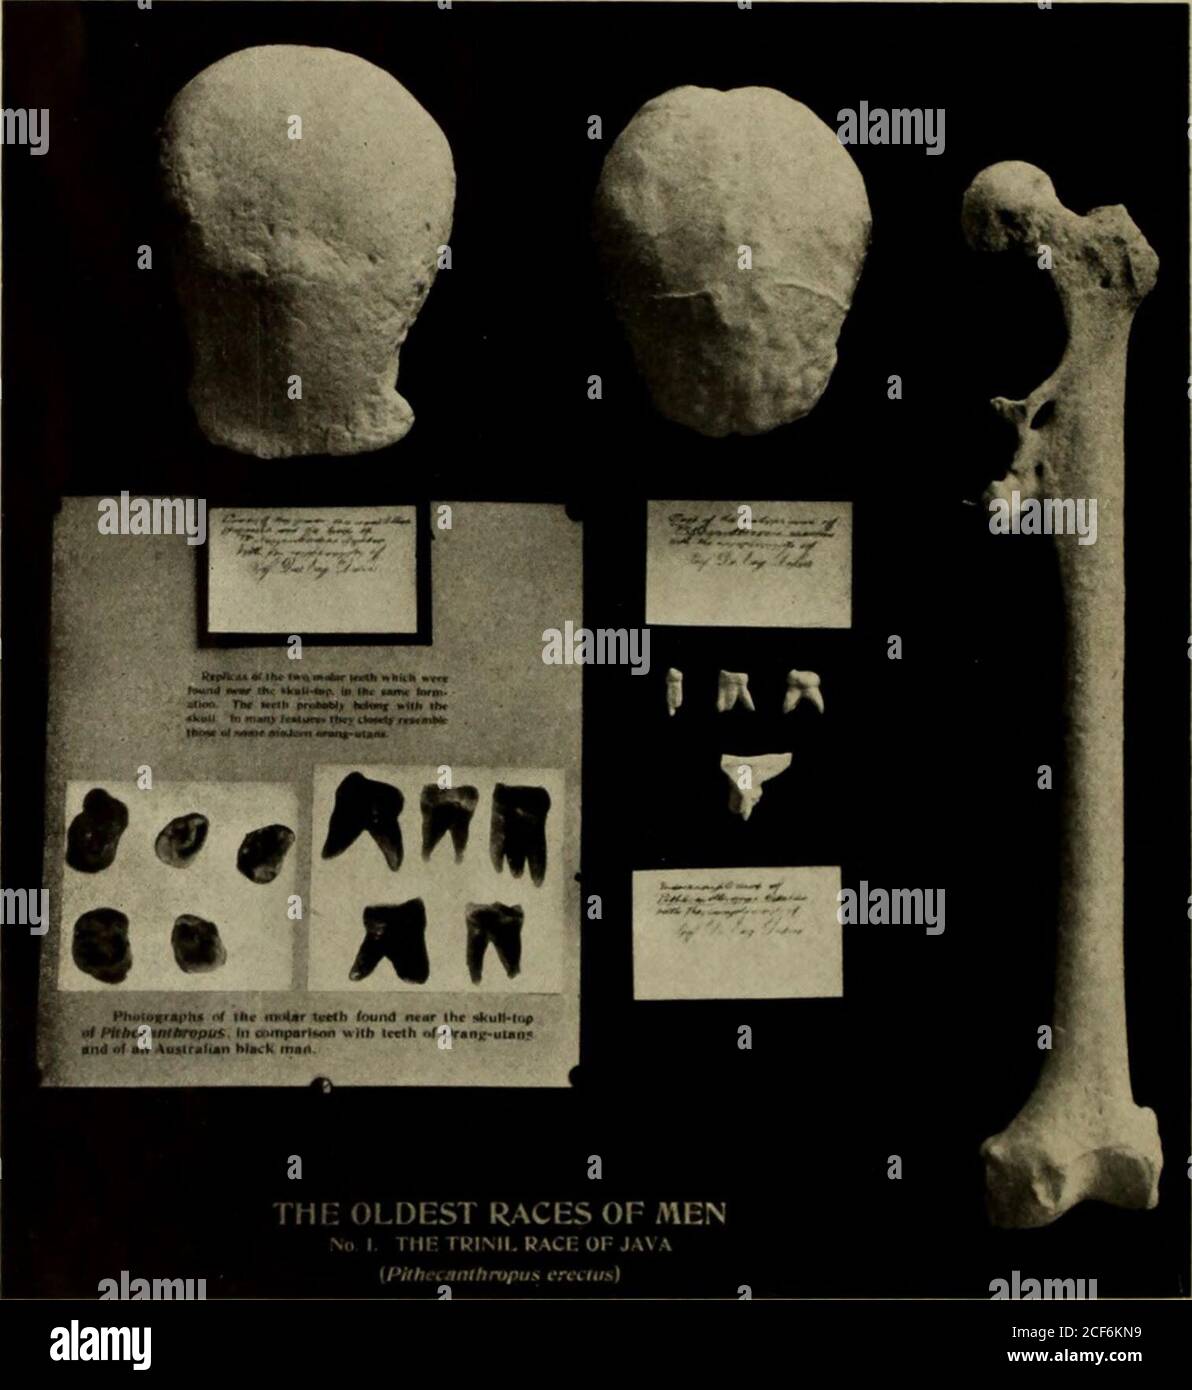 . Broschüre. Abb. 3. Obere Prämolaren und erste und zweite obere Molaren von fossilen Menschen-apeAustralopithecus. Nach Dem Besen. Durch den letzten Teil des Alters der Säugetiere war der vormenschliche Bestand wahrscheinlich in mehrere verschiedene Arten zerbrochen worden, von denen einige rückständiger waren, andere progressiver in Richtung zu den höheren Arten.. PITHECANTHROPUS; DER APE-MANN VON JAVA ABB. 4. (Schädeloberseite, Endokranialhöhle, Oberschenkel und Zähne. Die Etiketten sind in der Handschrift von Dr. Dubois, dem Entdecker dieses bemerkenswerten Exemplars, von dem diese Abgüsse präsentiert wurden, zu finden. Die Zähne gelten nun als gehörten t Stockfoto